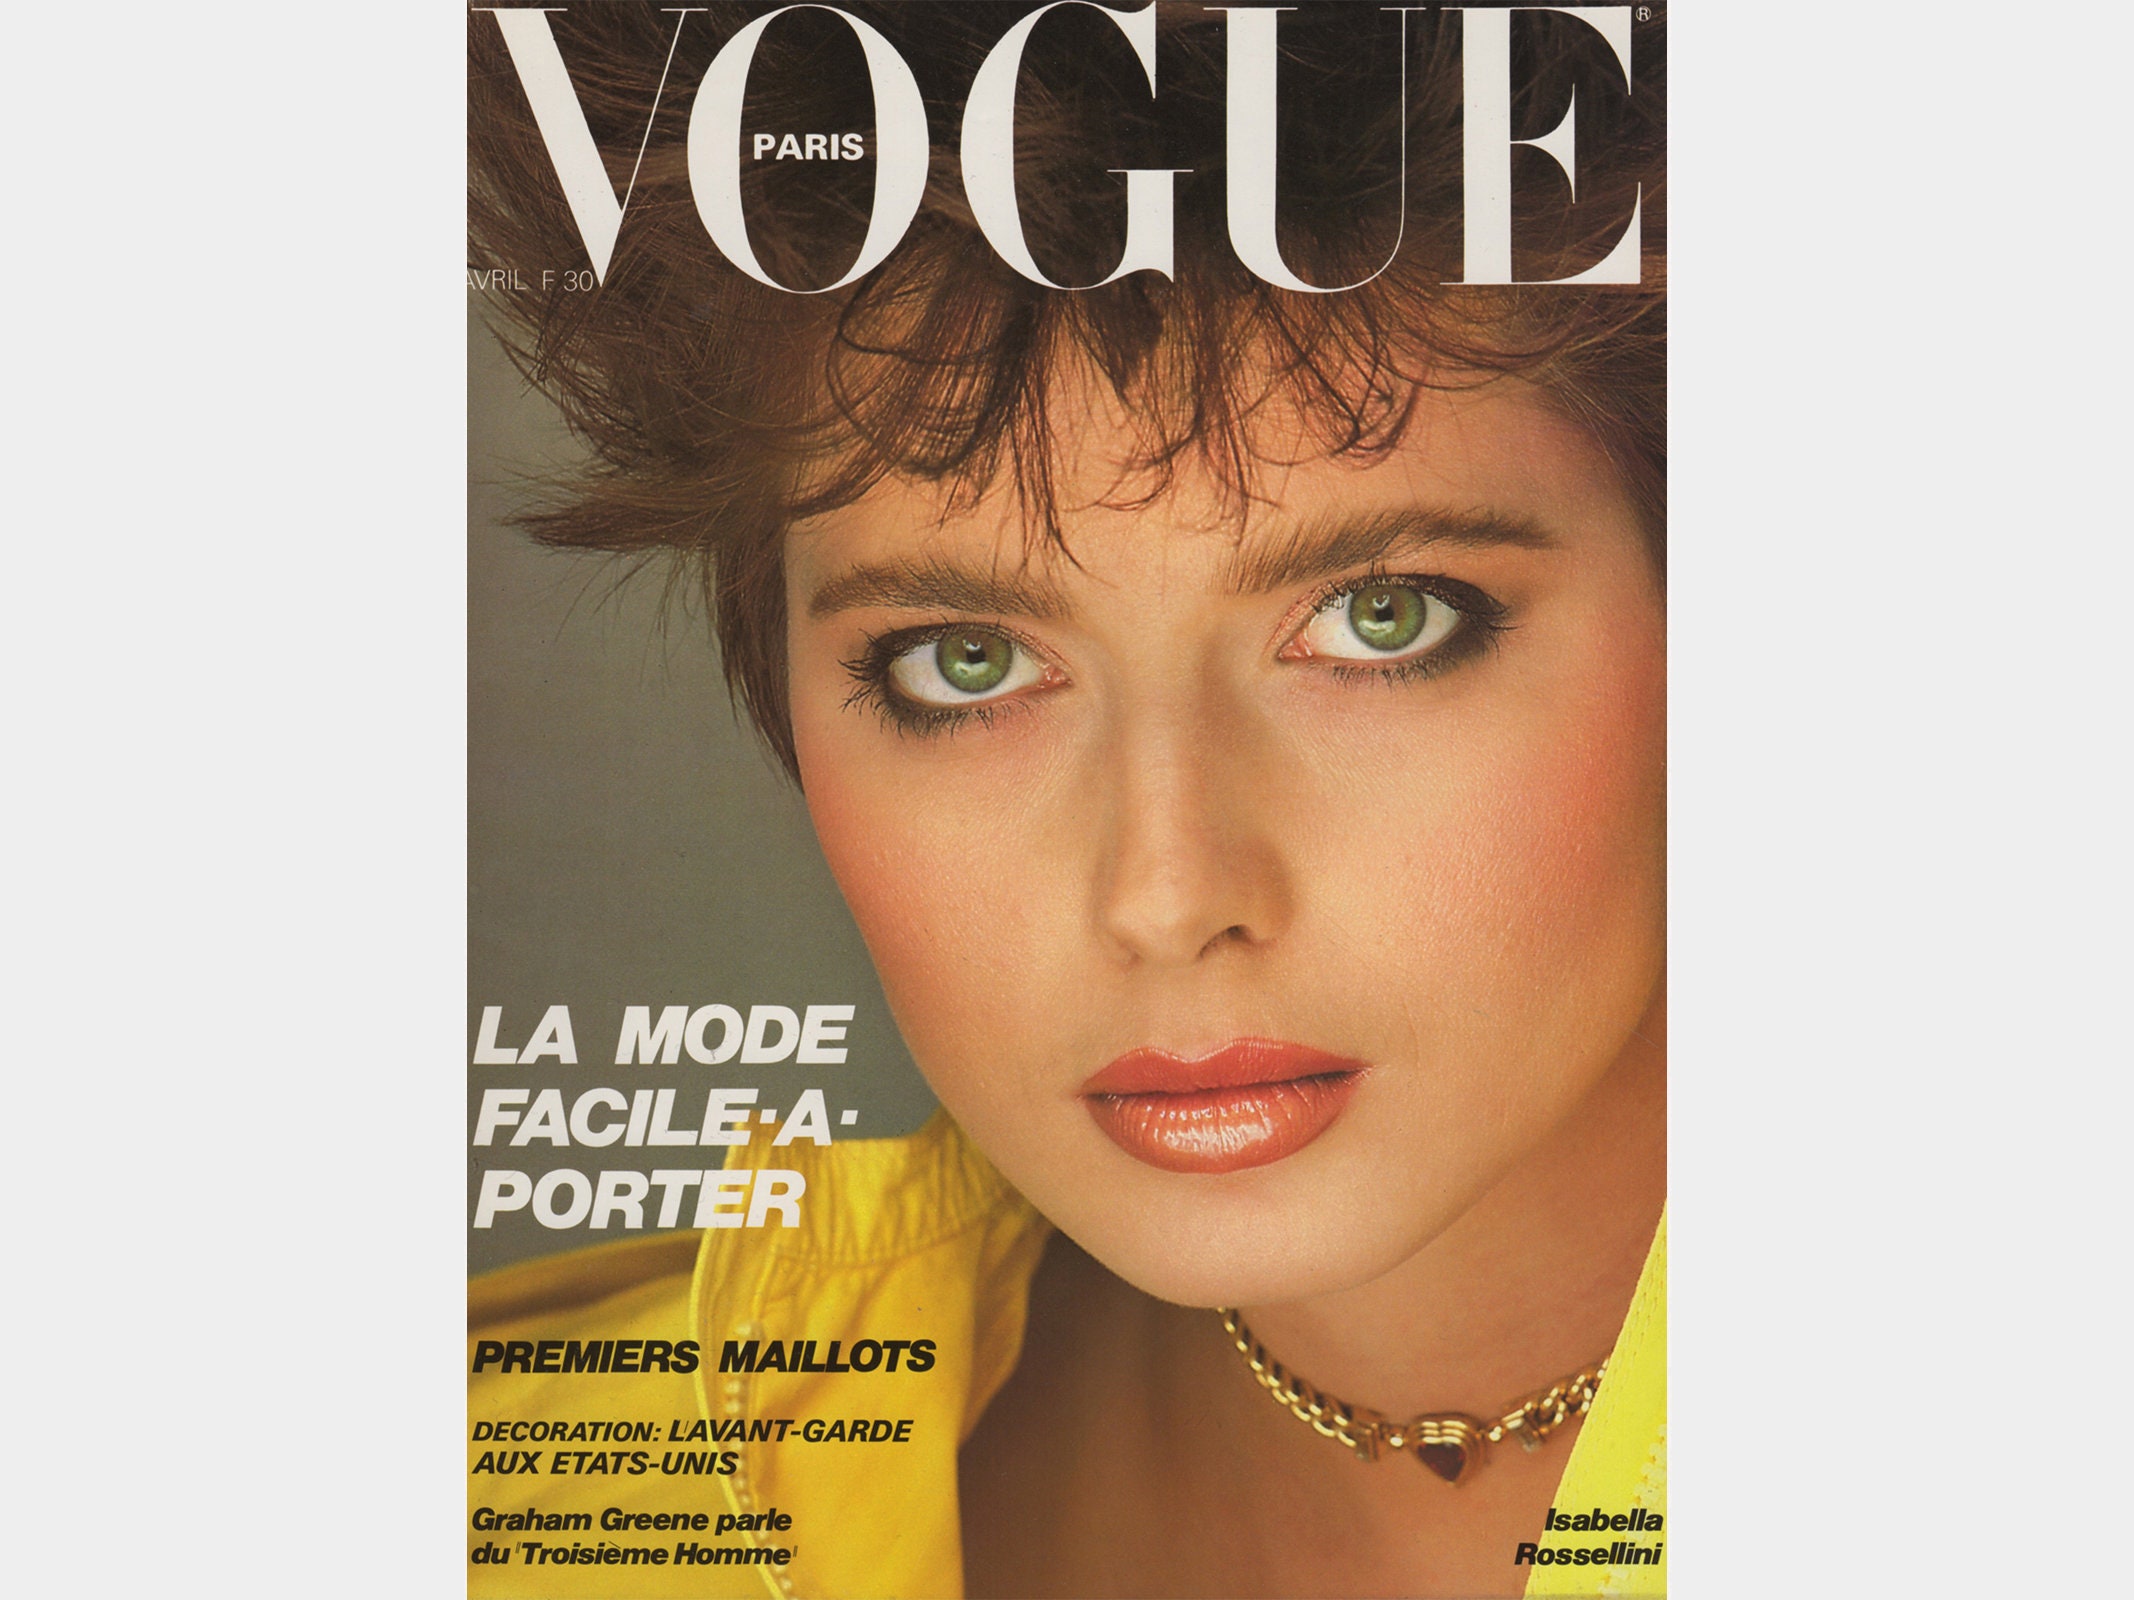 VOGUE PARIS April 1982 Vintage Fashion Magazine 1980s Retro 